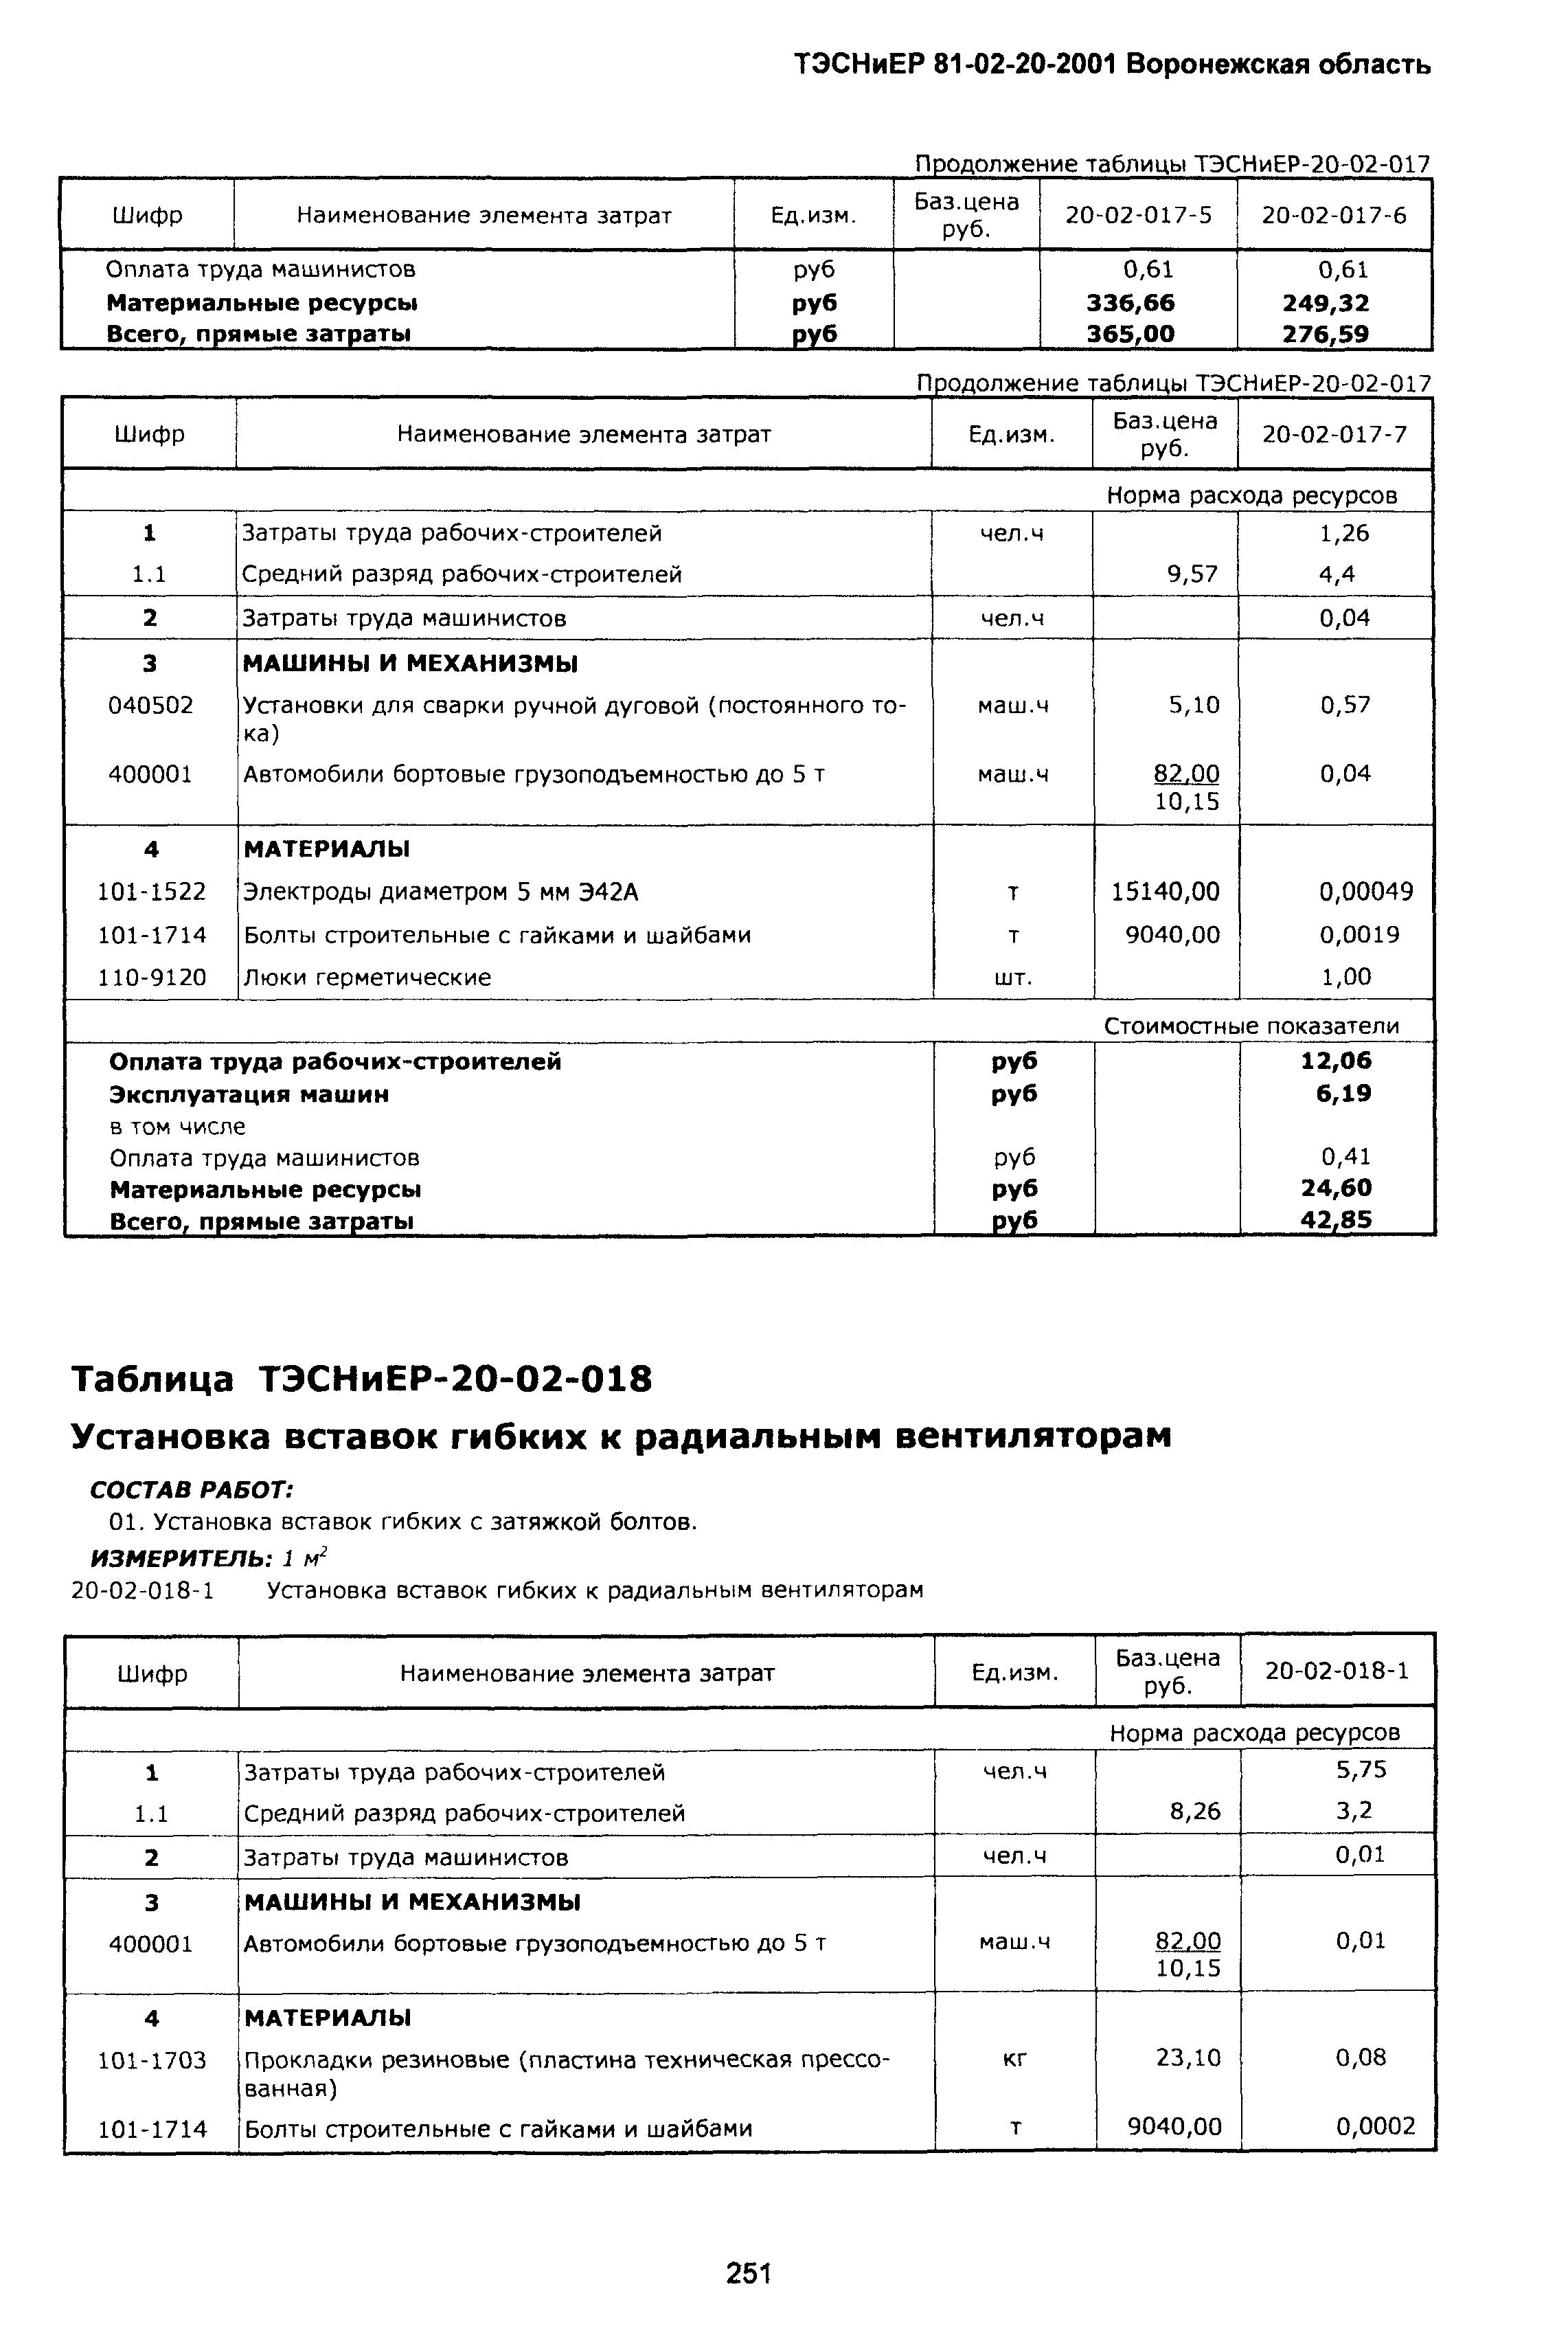 ТЭСНиЕР Воронежской области 81-02-20-2001